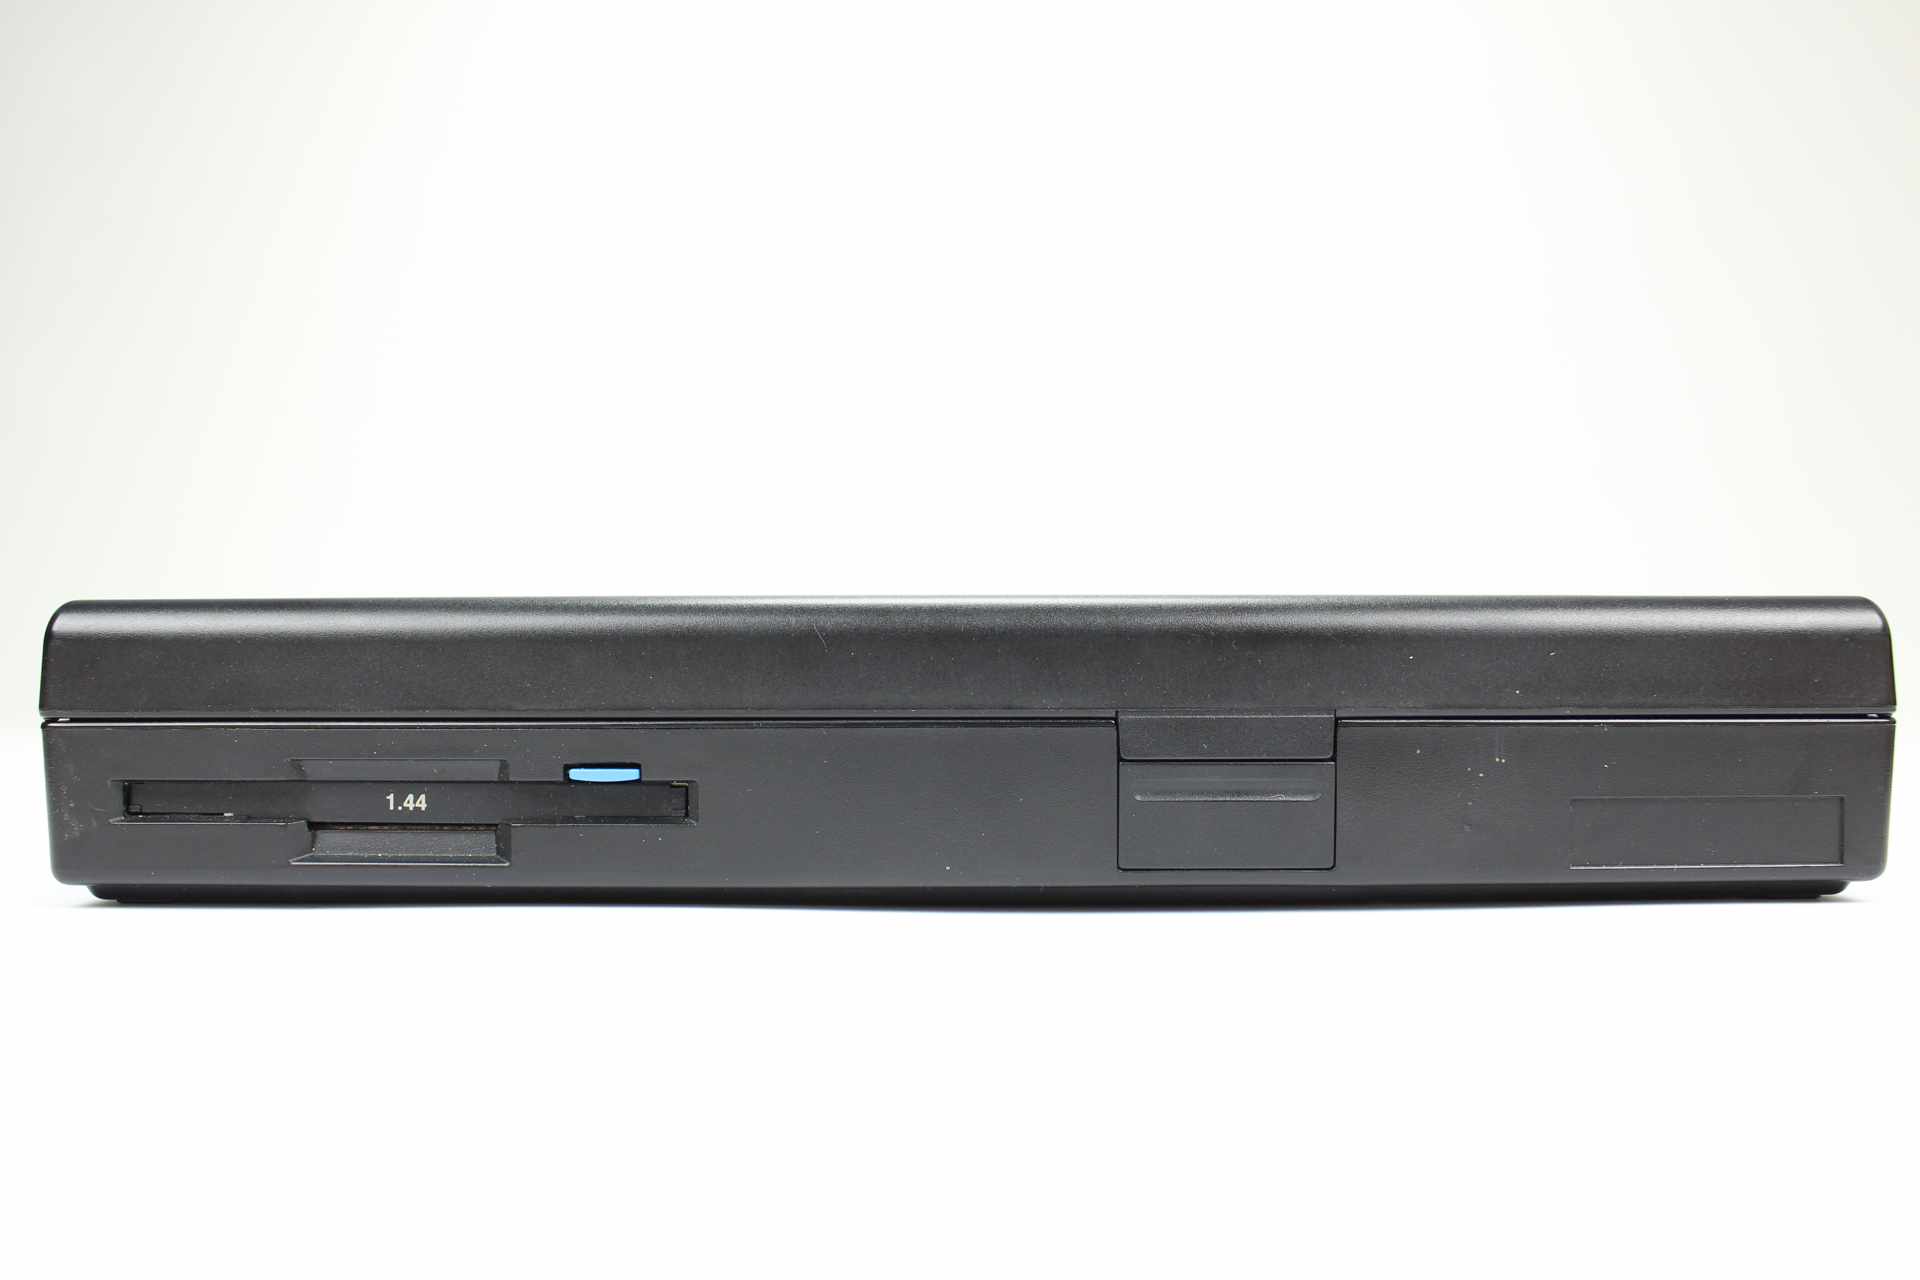 IBM ThinkPad 340